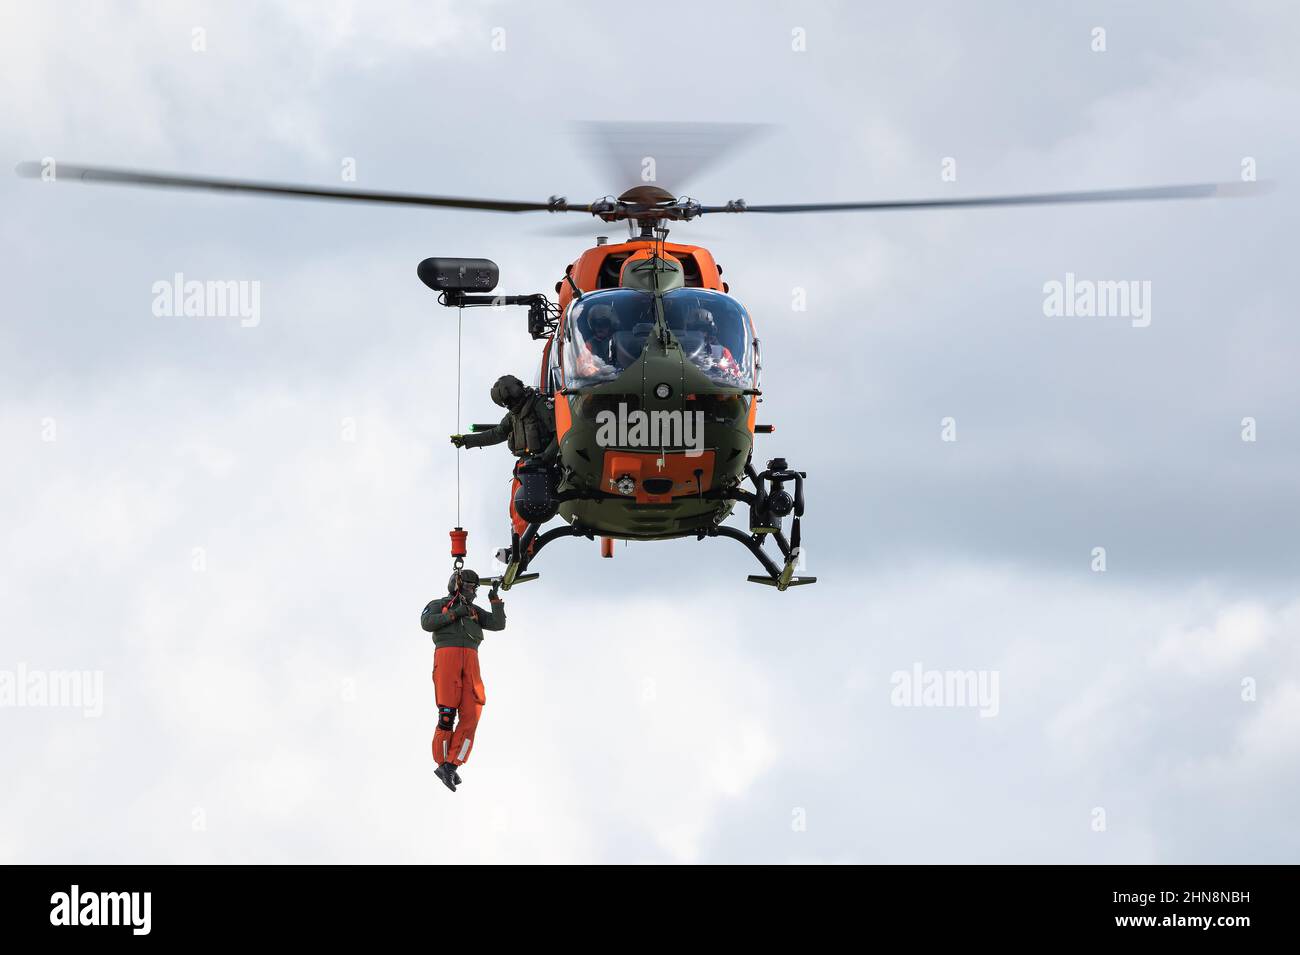 Un hélicoptère de recherche et de sauvetage Airbus H145M du corps d'aviation de l'armée allemande. Banque D'Images